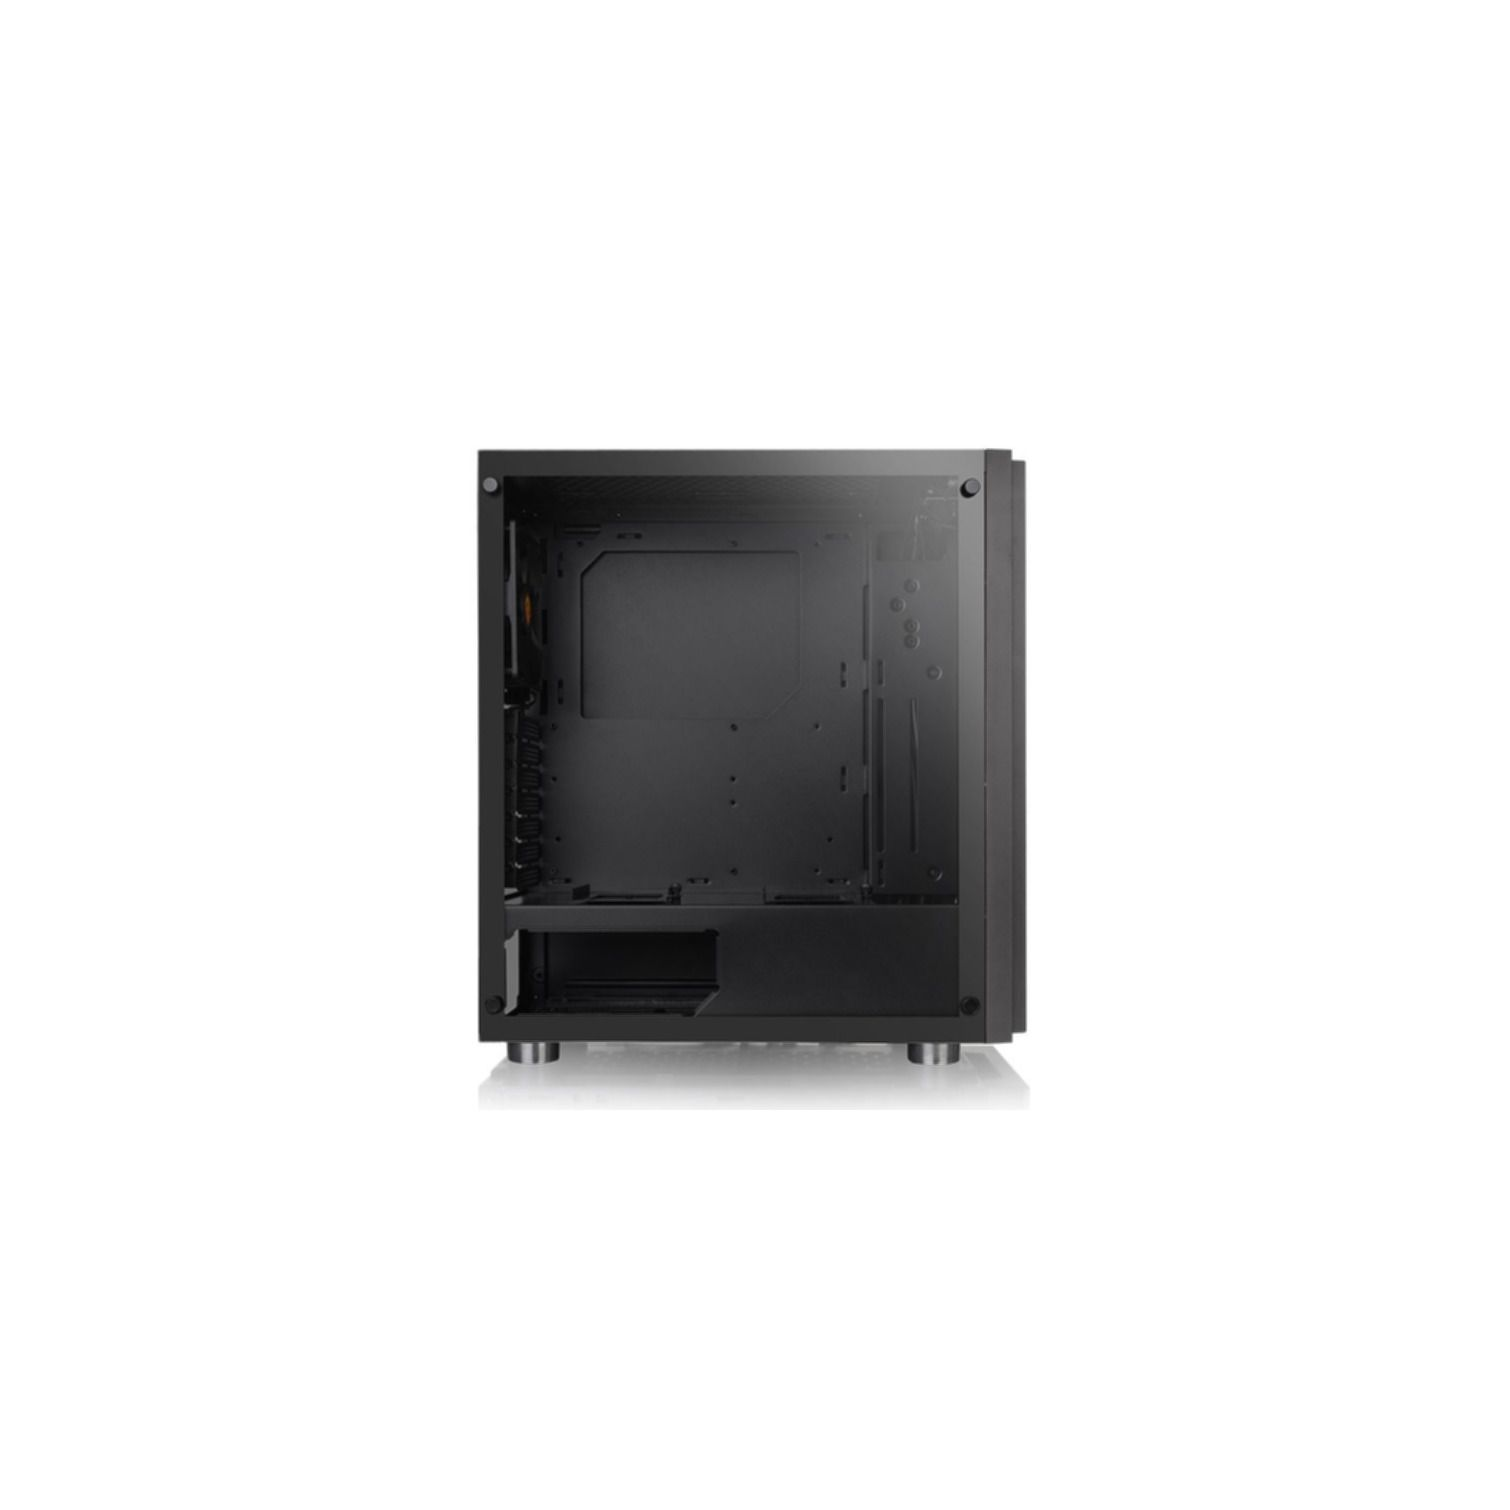 THERMALTAKE H100 TG PC Gehäuse, schwarz